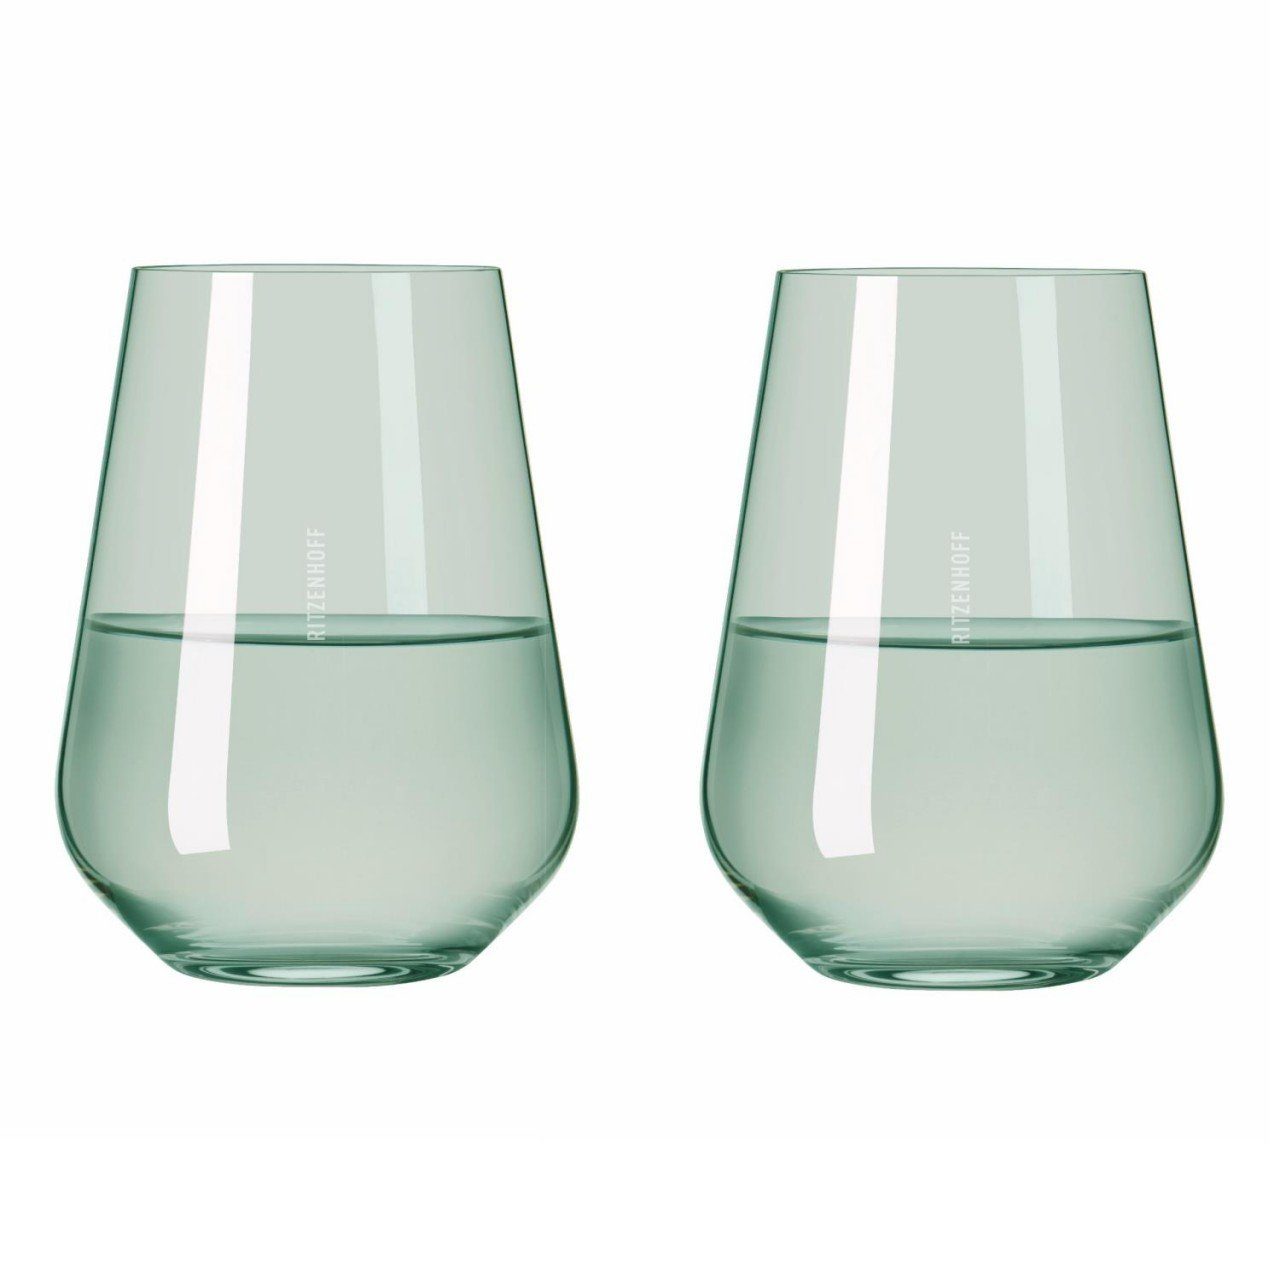 D:9.3cm Glas Rotweingläser H:12.4cm erhältlich Passende Glas, Kollektion Fjordlicht, Glas, derselben Weißwein‐ Grün und Ritzenhoff